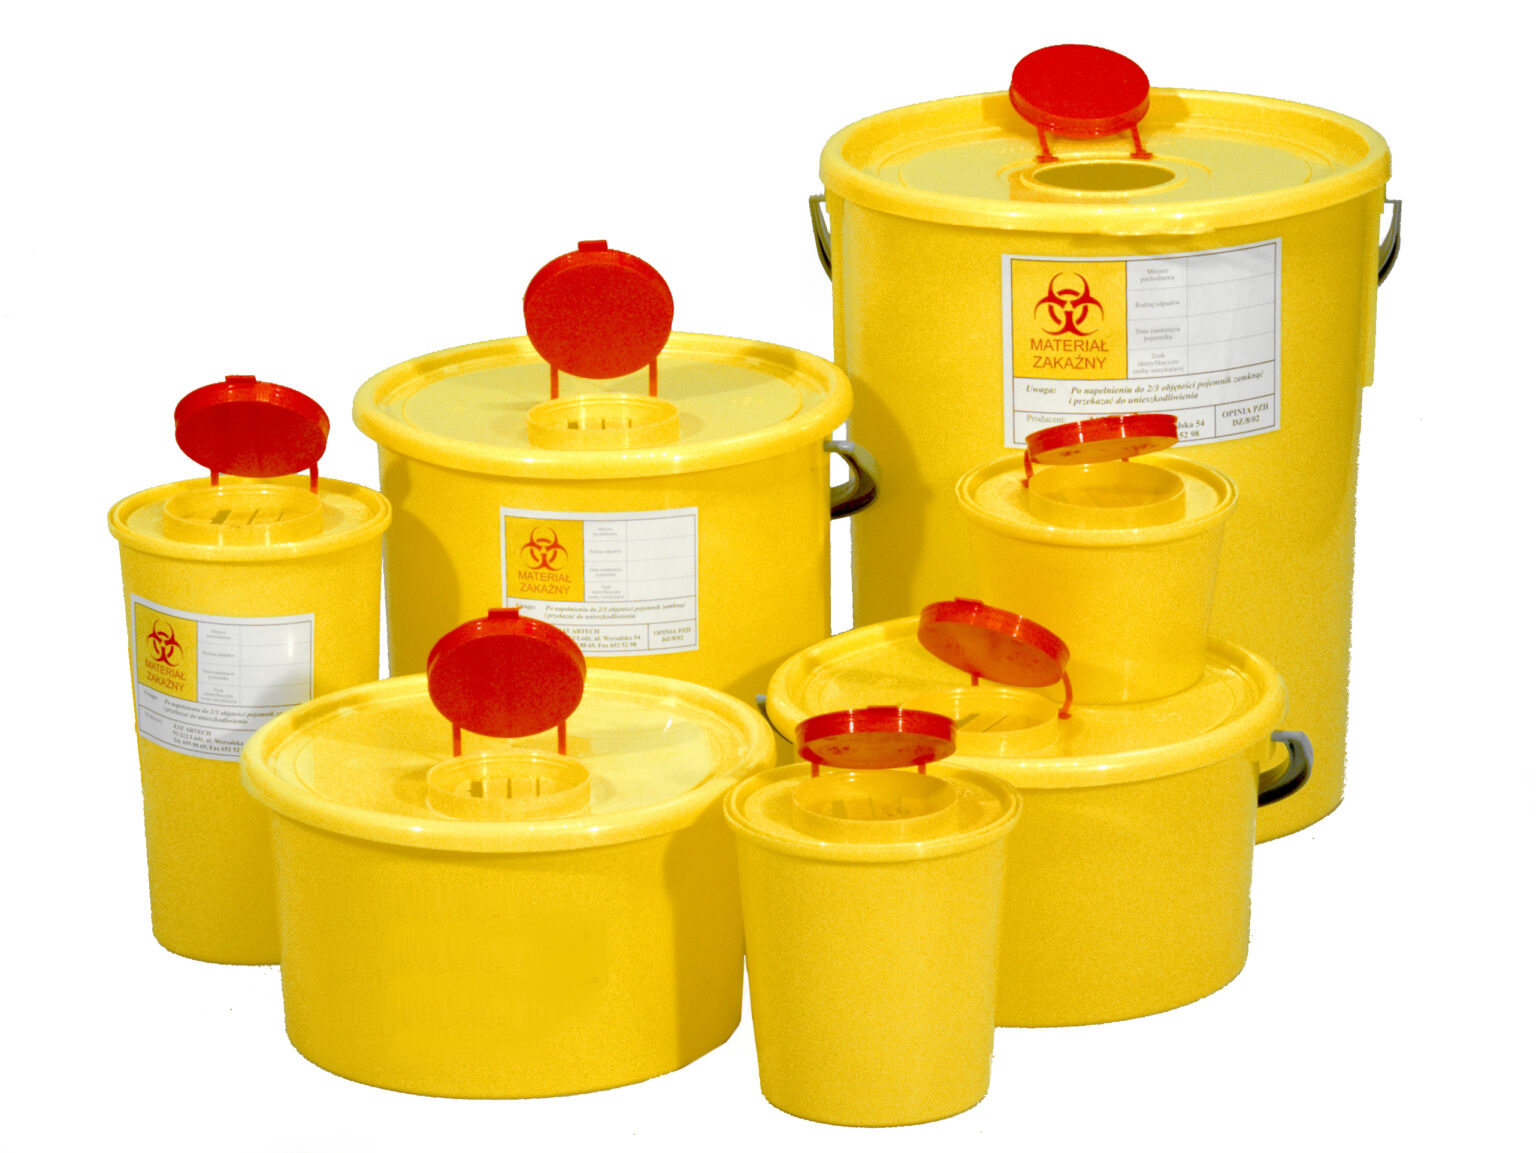 Емкость для сбора бытовых и медицинских отходов. Емкость-контейнер для медицинских отходов/2018 (4 пусковой), шт. Бак с педалью для мед отходов 25л кл.б (желтый) "инновация". Контейнеры КОО-02 (3л+6л) "Матрешка" для медицинской утилизации желтые. Ёмкость контейнер для временного хранения медицинских отходов 25 л.